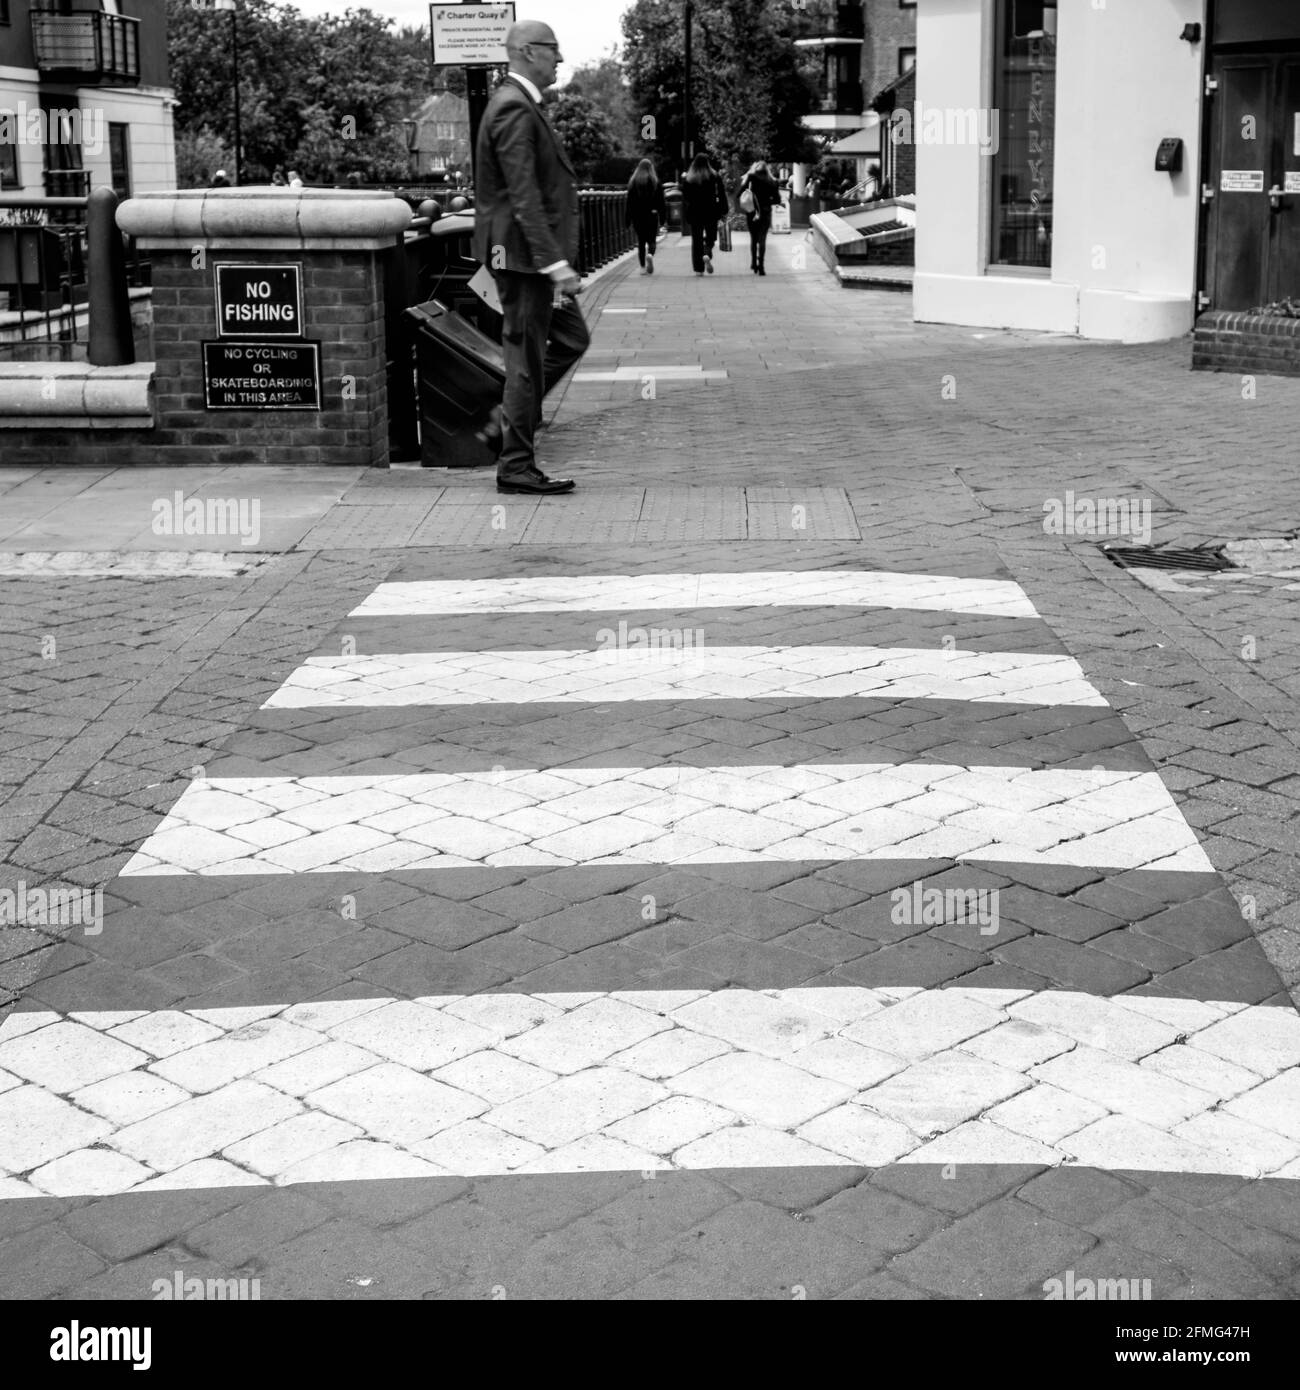 Kingston upon Thames Surrey Londres Royaume-Uni le 07 2021 mai, homme d'affaires seul marchant devant UN piéton ou Zebra Road Crossing Banque D'Images